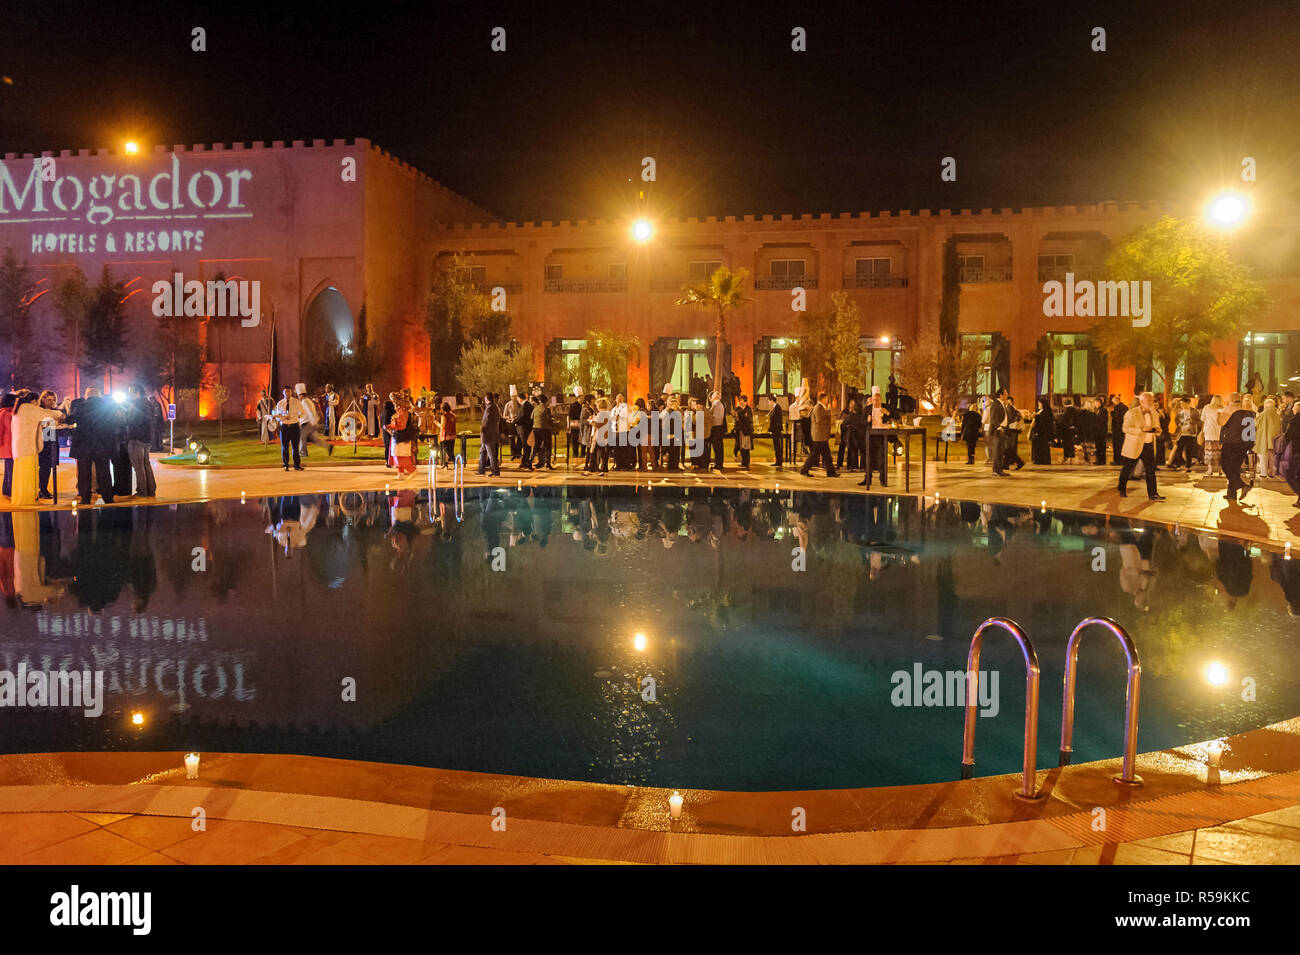 28-02-15, Marrakesch, Marokko. Touristische Unterhaltung an der Mogador Hotel, mit Schlagzeuger, Musiker und Akrobaten. Foto: © Simon Grosset Stockfoto